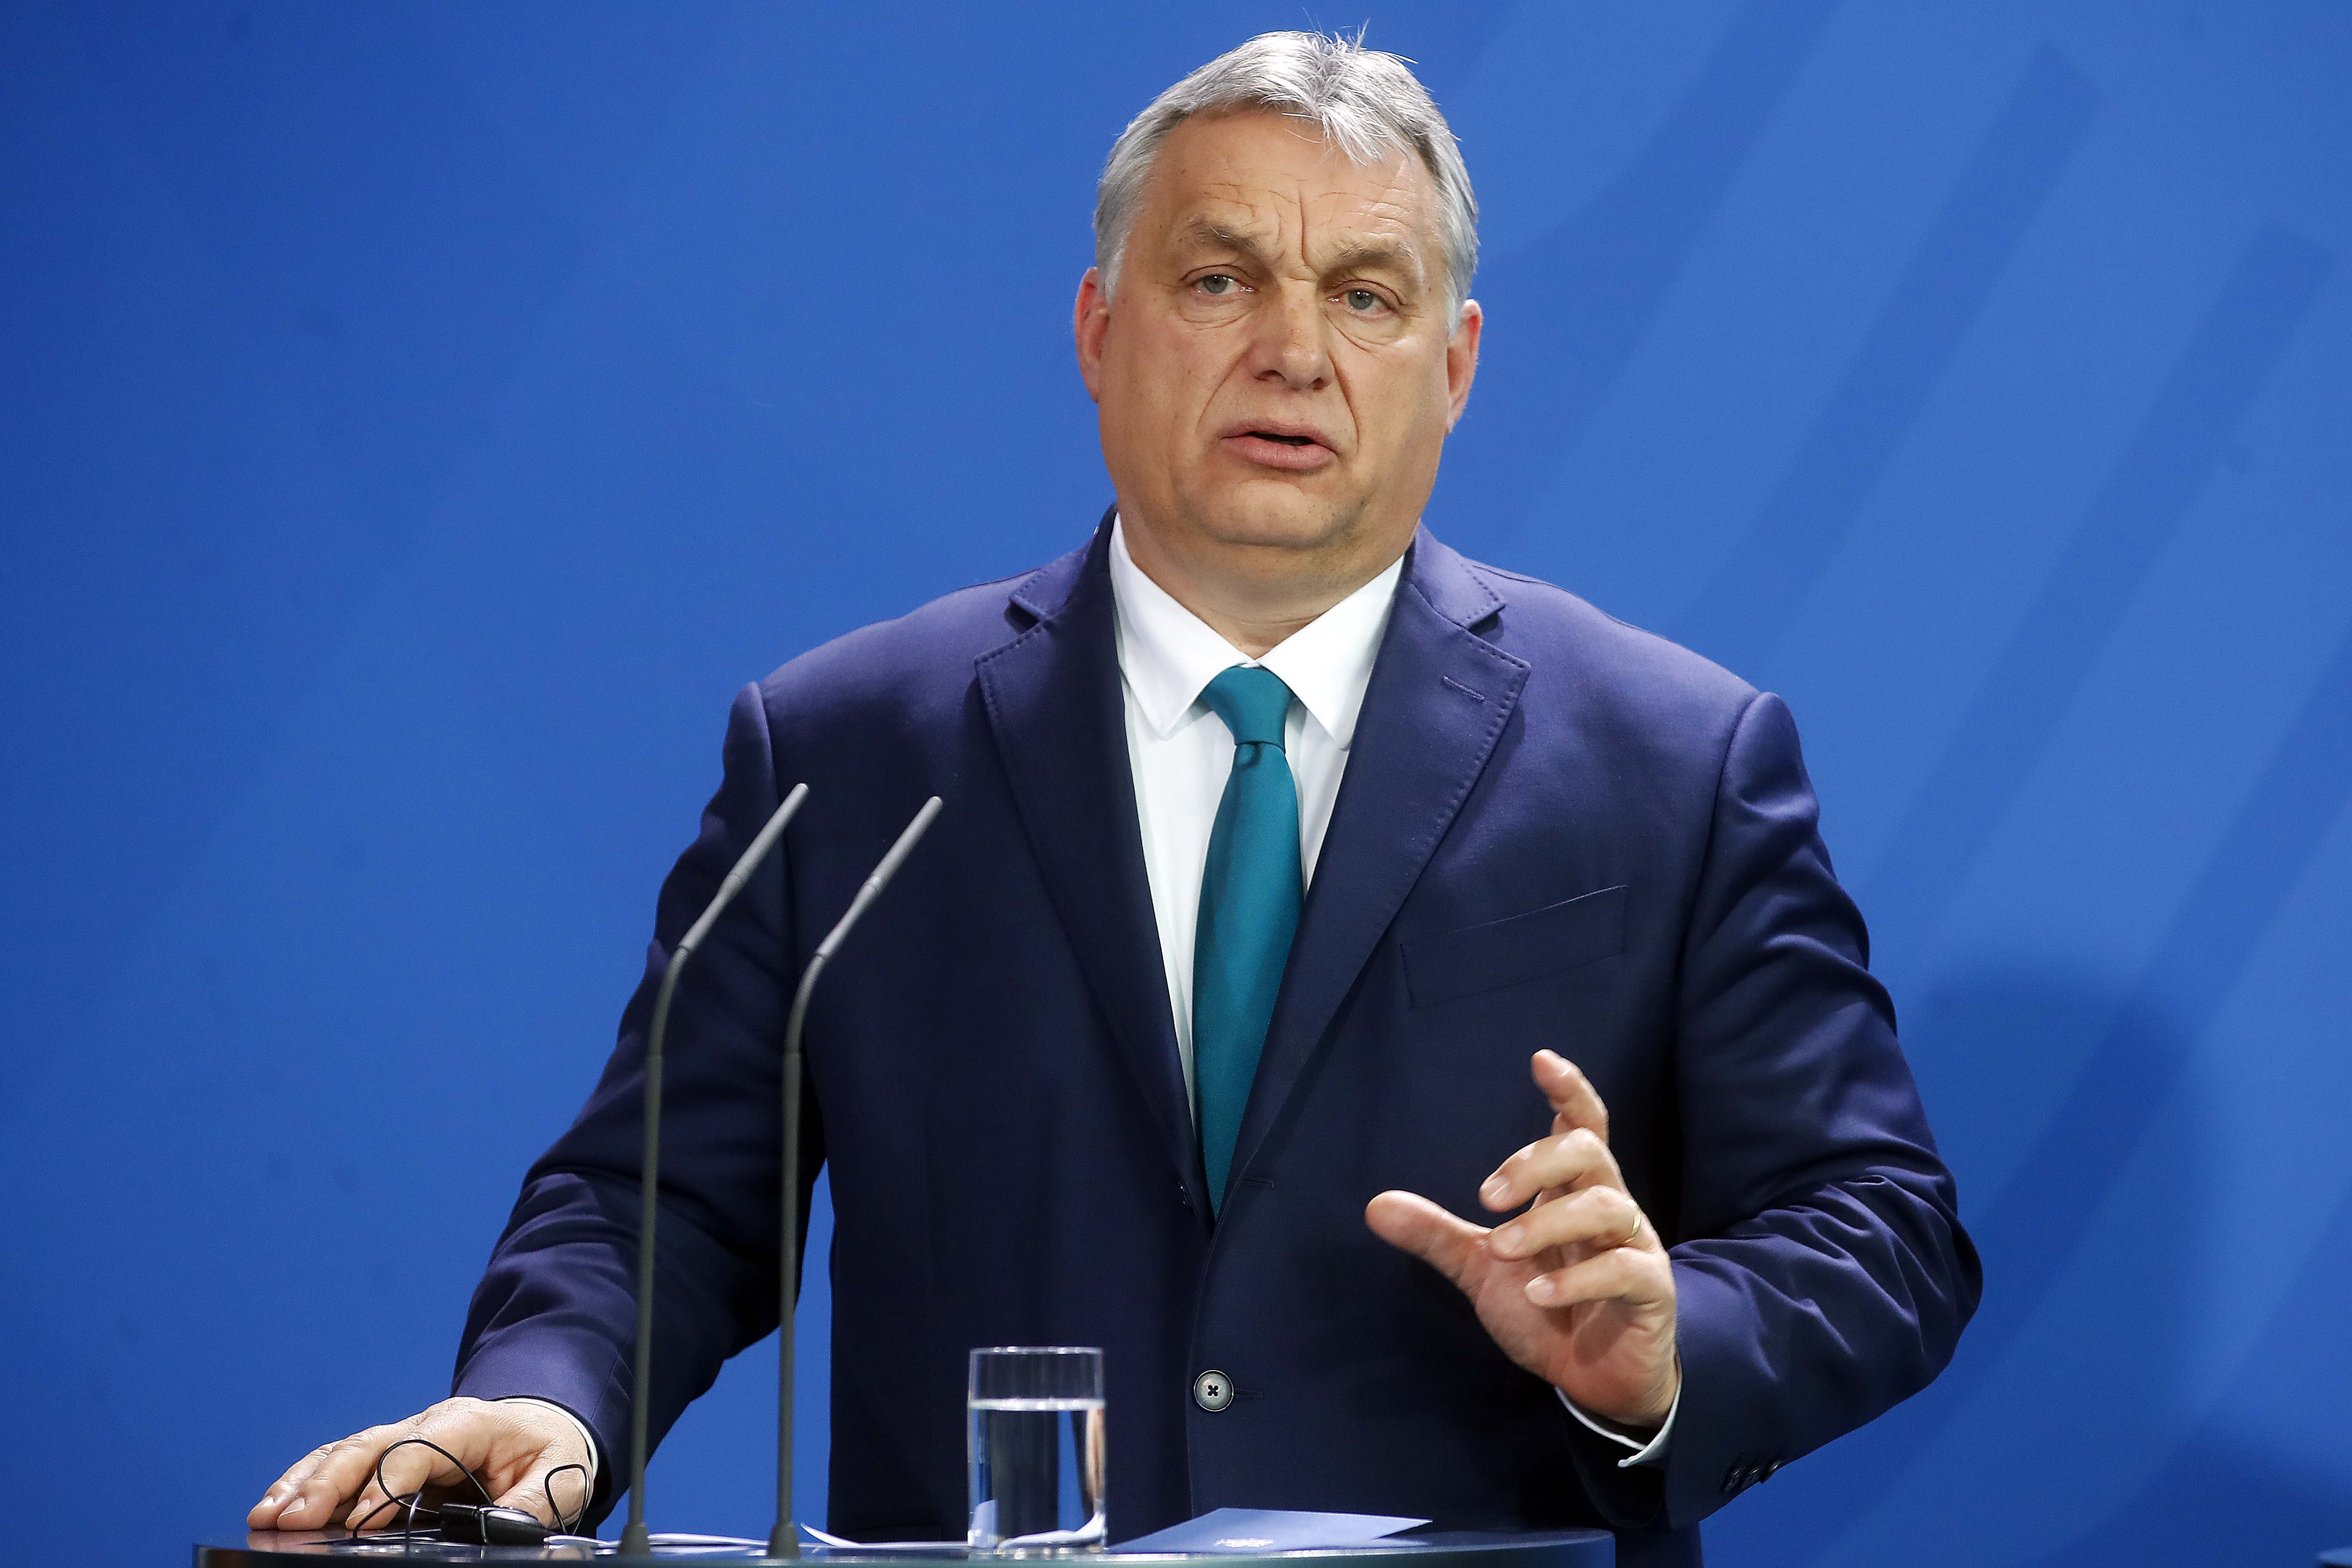 Premierul Ungariei Viktor Orban continuă să se opună noilor sancţiuni antiruse şi cere evitarea temei la summitul UE: "Este foarte improbabil" un acord privind un embargou în privinţa importurilor de petrol rus în următoarele zile